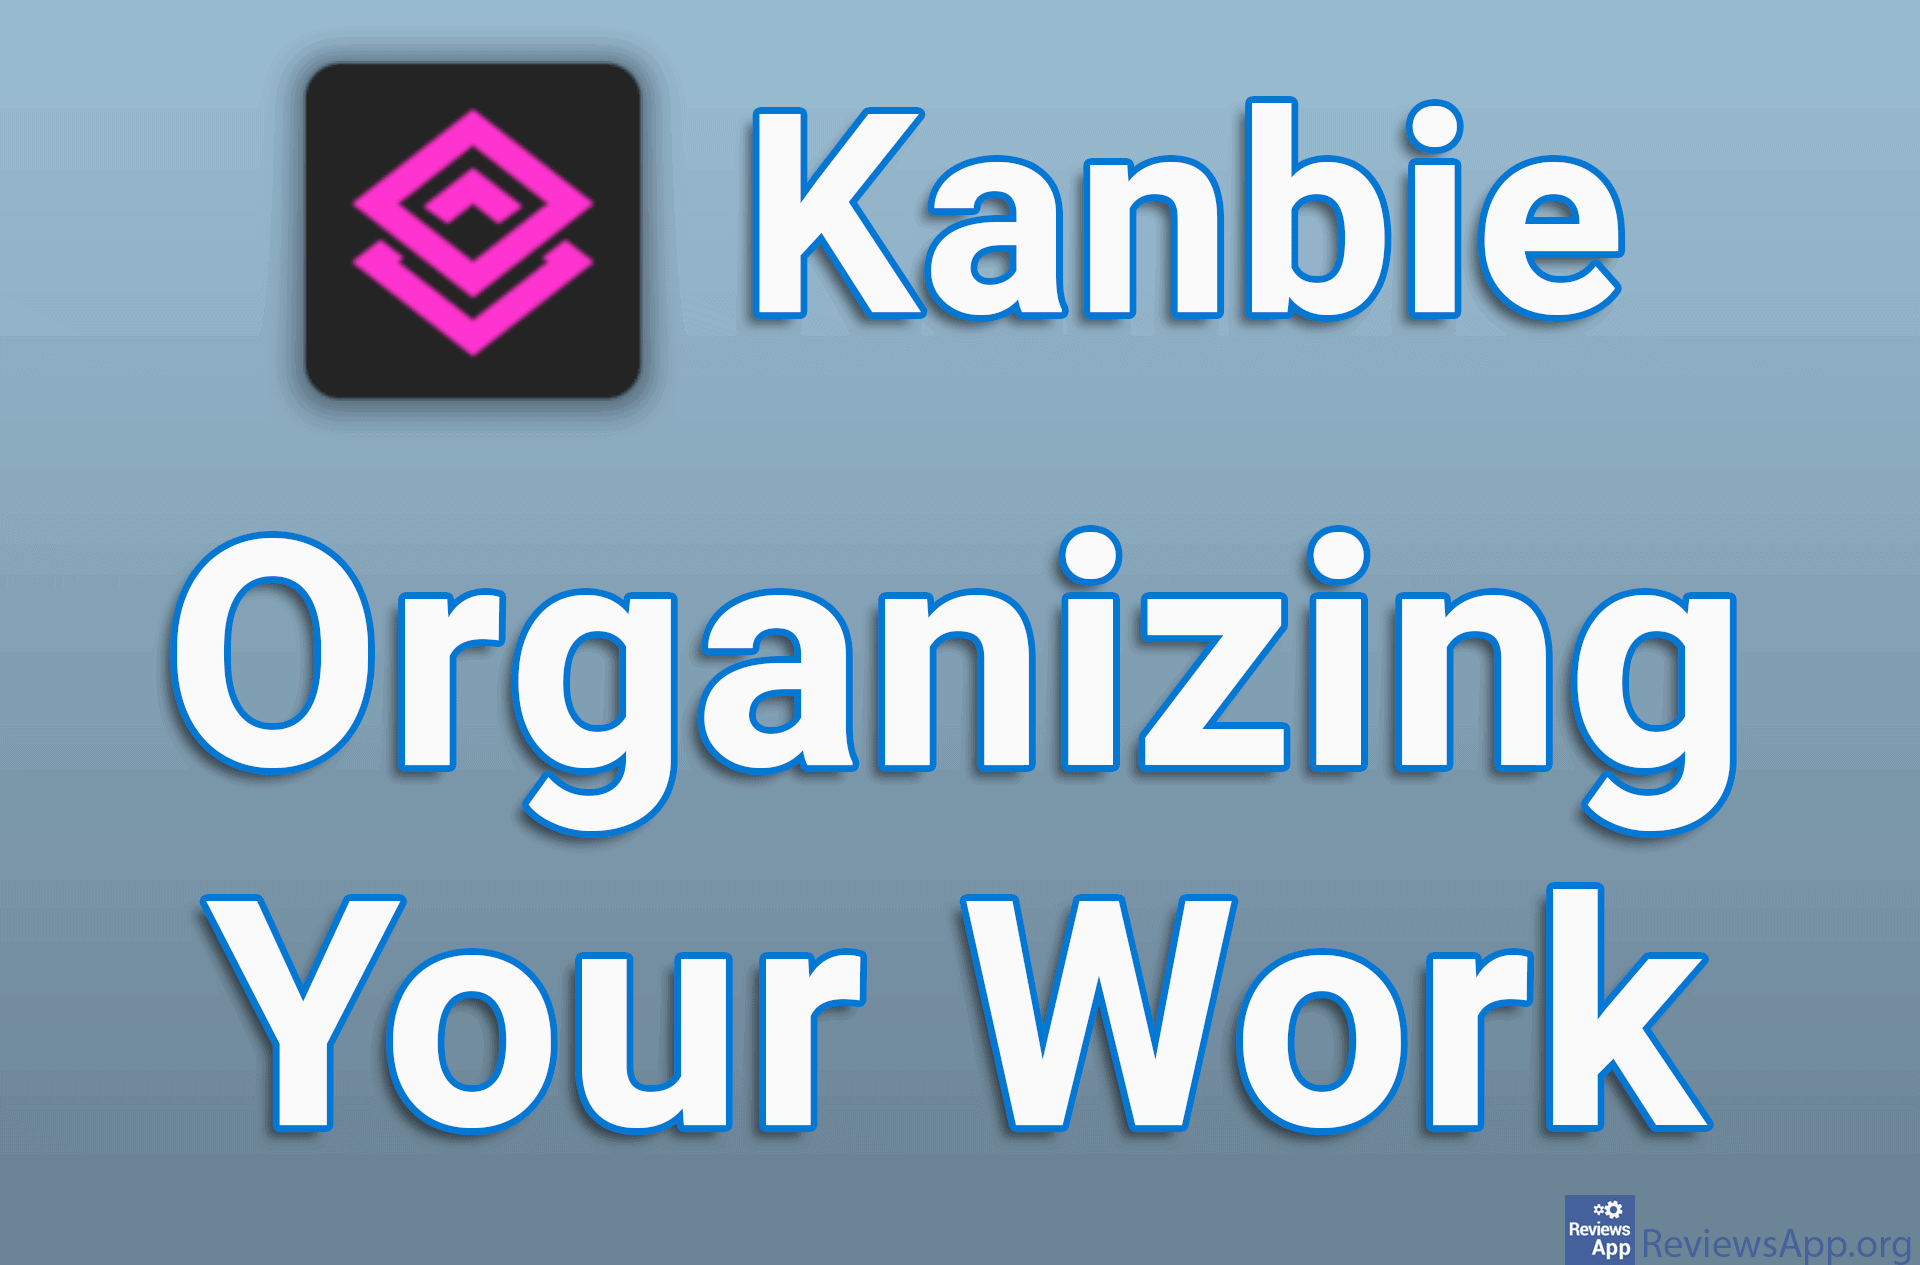 Kanbie – Organizing Your Work